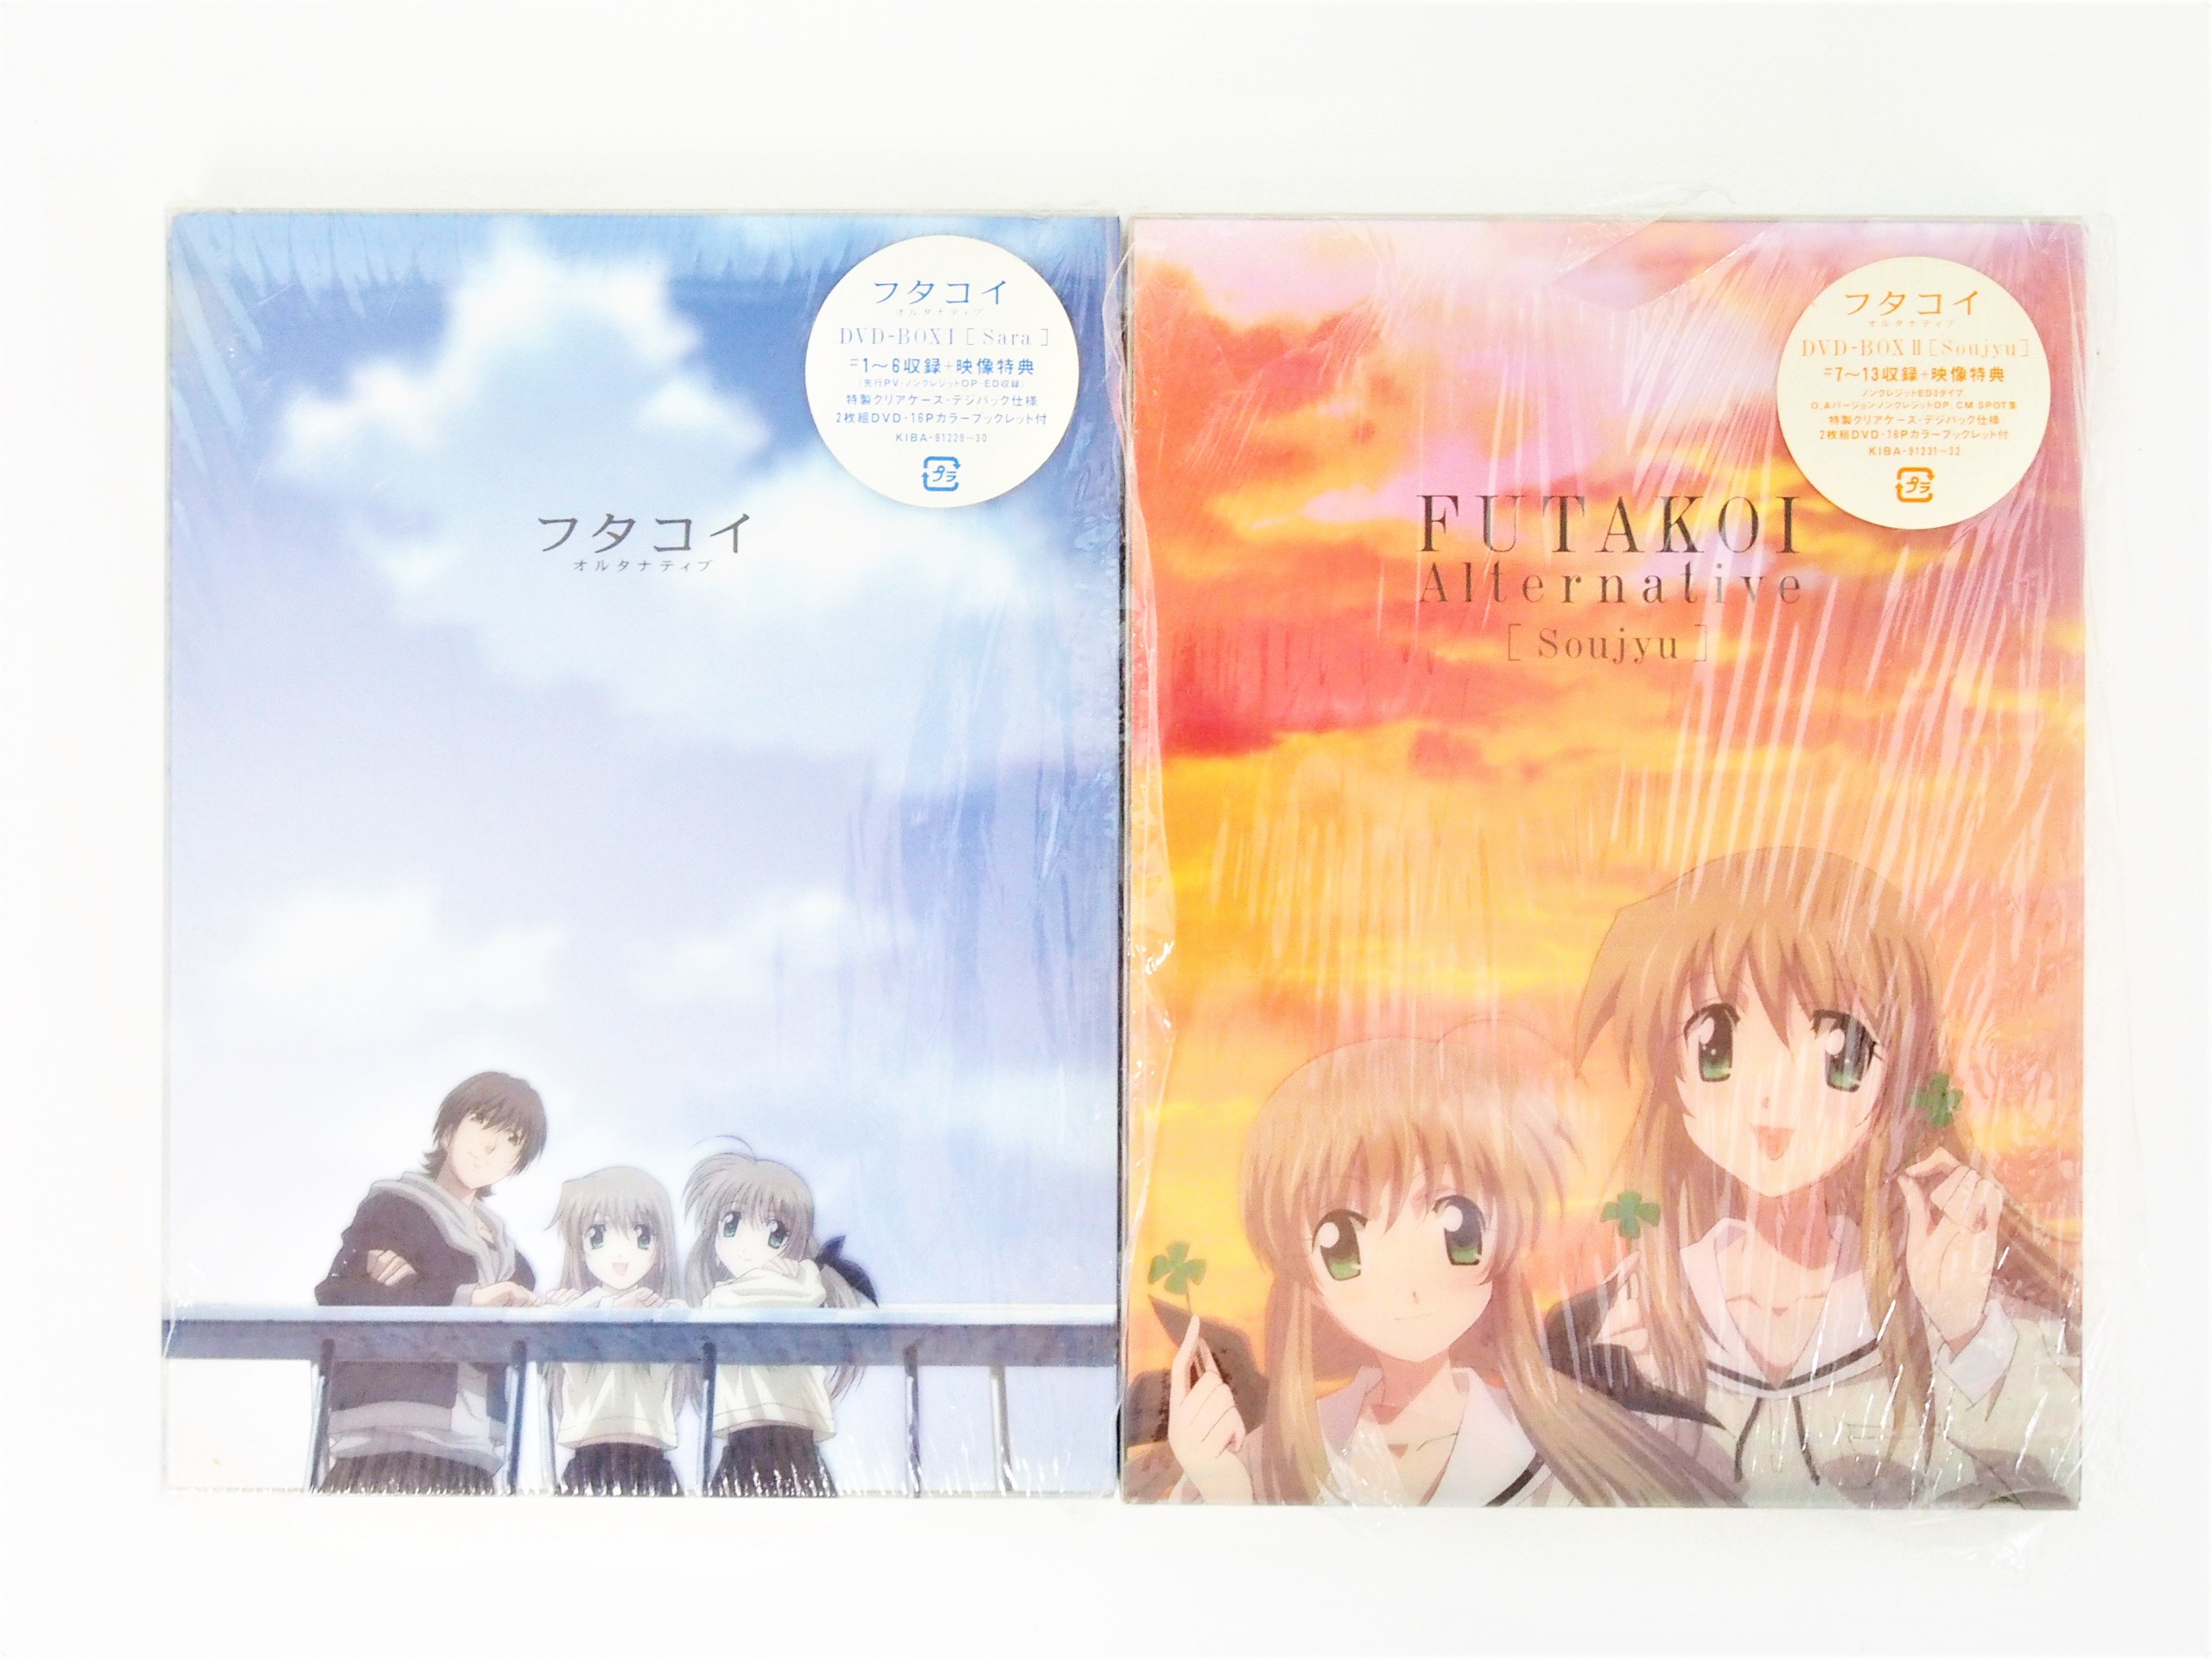 高価買取したタコイ オルタナティブ DVD-BOX Sara+Soujyu全巻セットの表紙